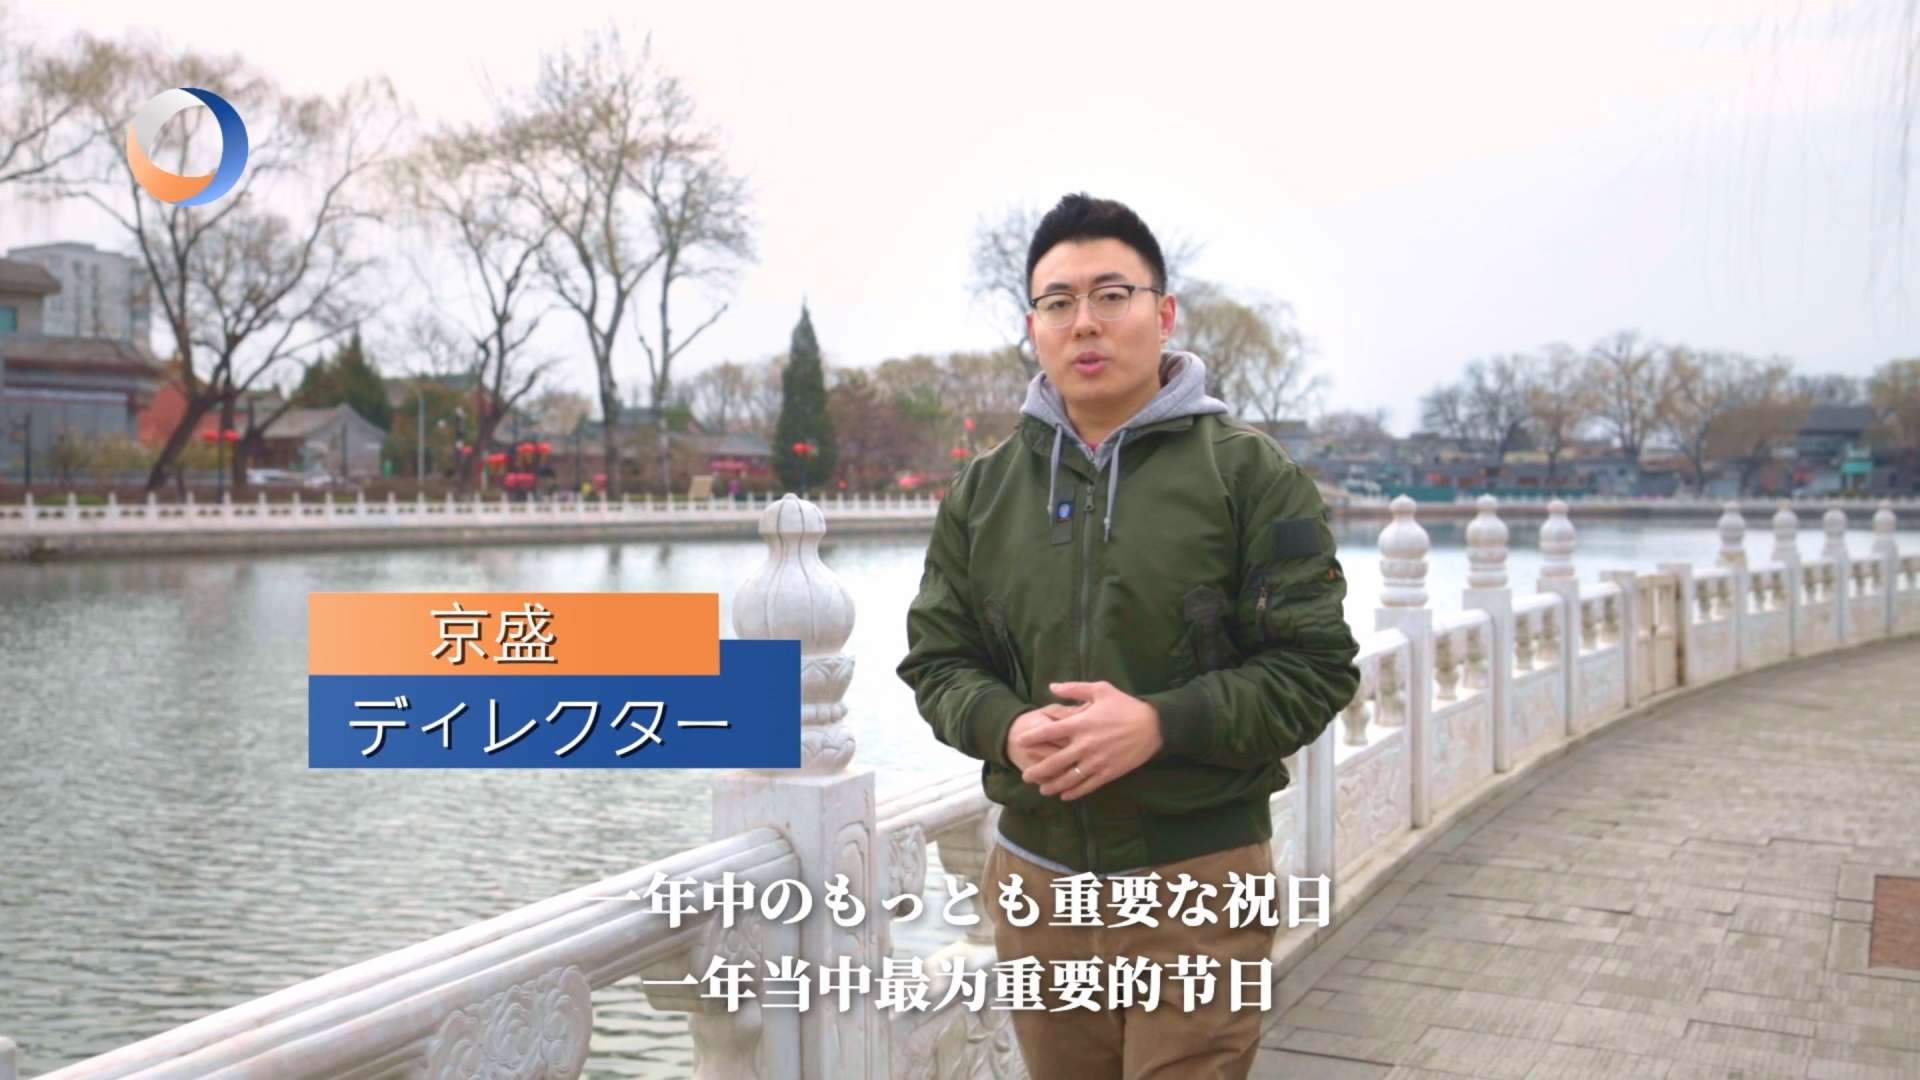 人民中国网-第三只眼看中国系列专题片《医生和外卖员的春节》